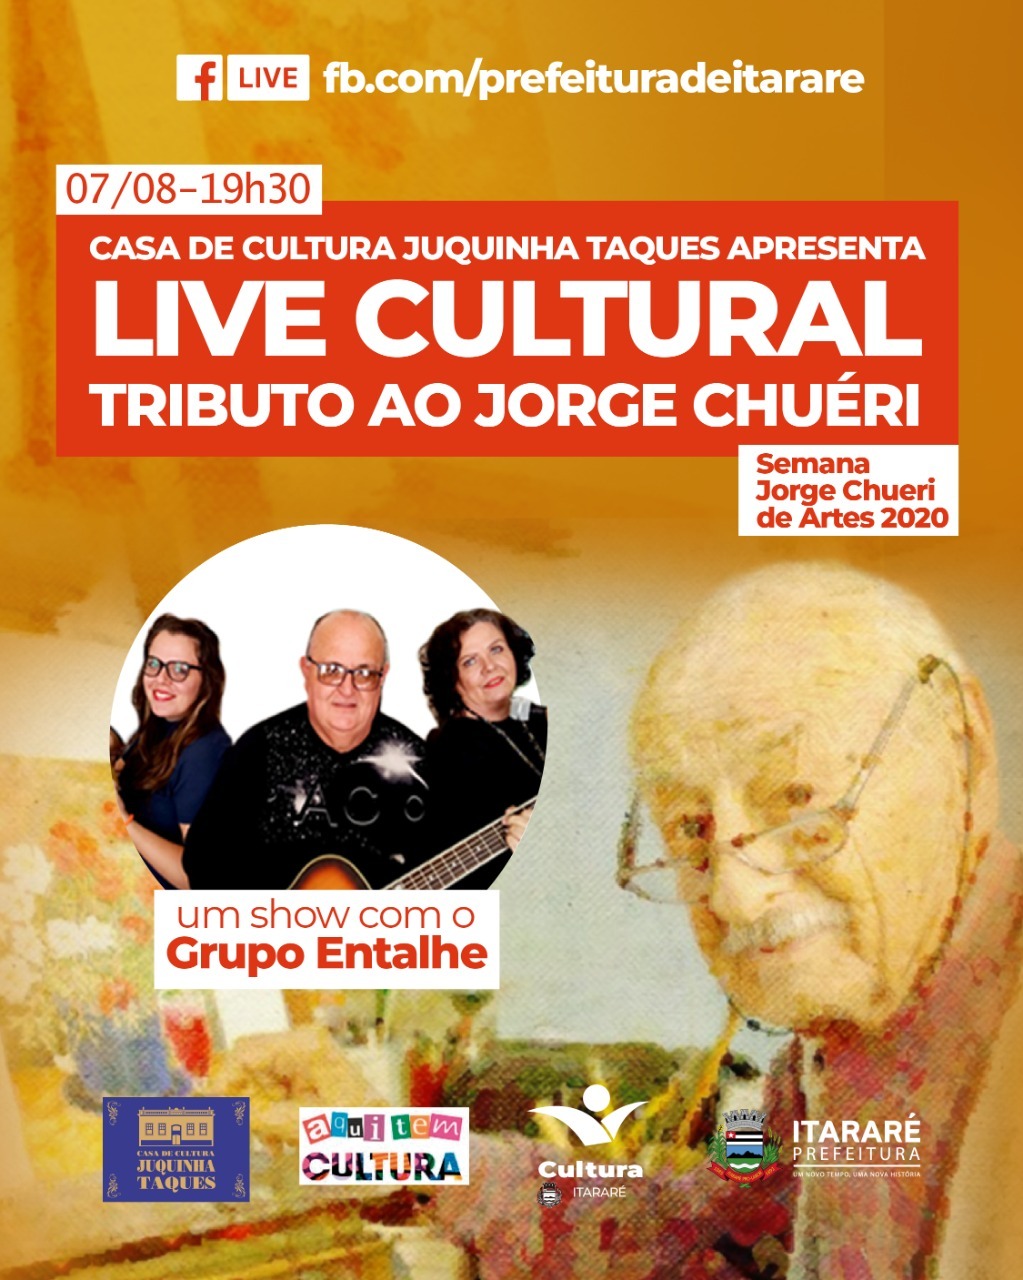 II Semana Jorge Chuéri de Artes: Prefeitura de Itararé (SP) promoverá live em homenagem ao artista